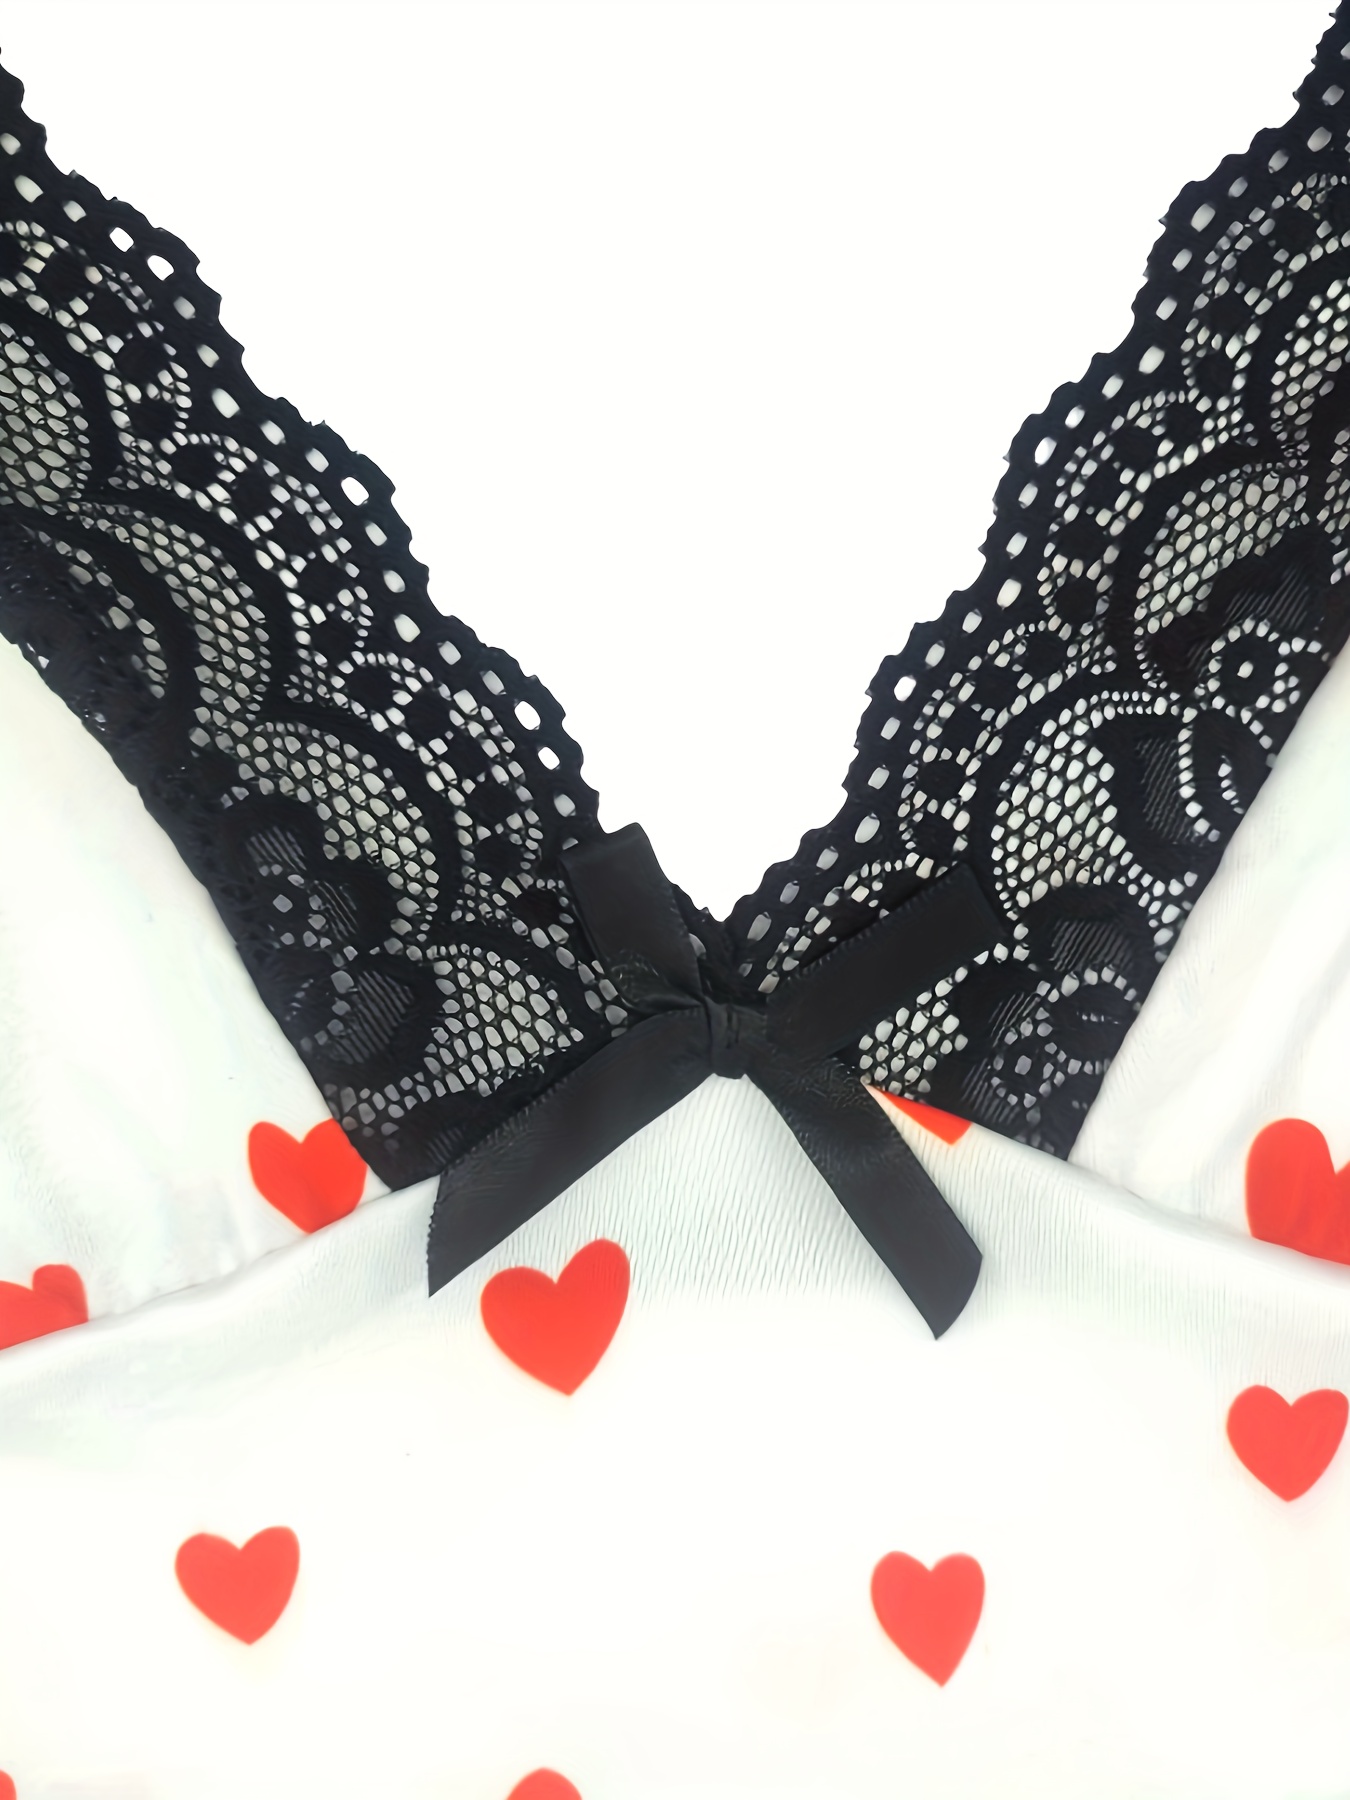 Plus Size Valentine's Day Sexy Lingerie Dress, Women's Plus Heart & Letter  Print Contrast Lace Trim Bow Decor Split Slips